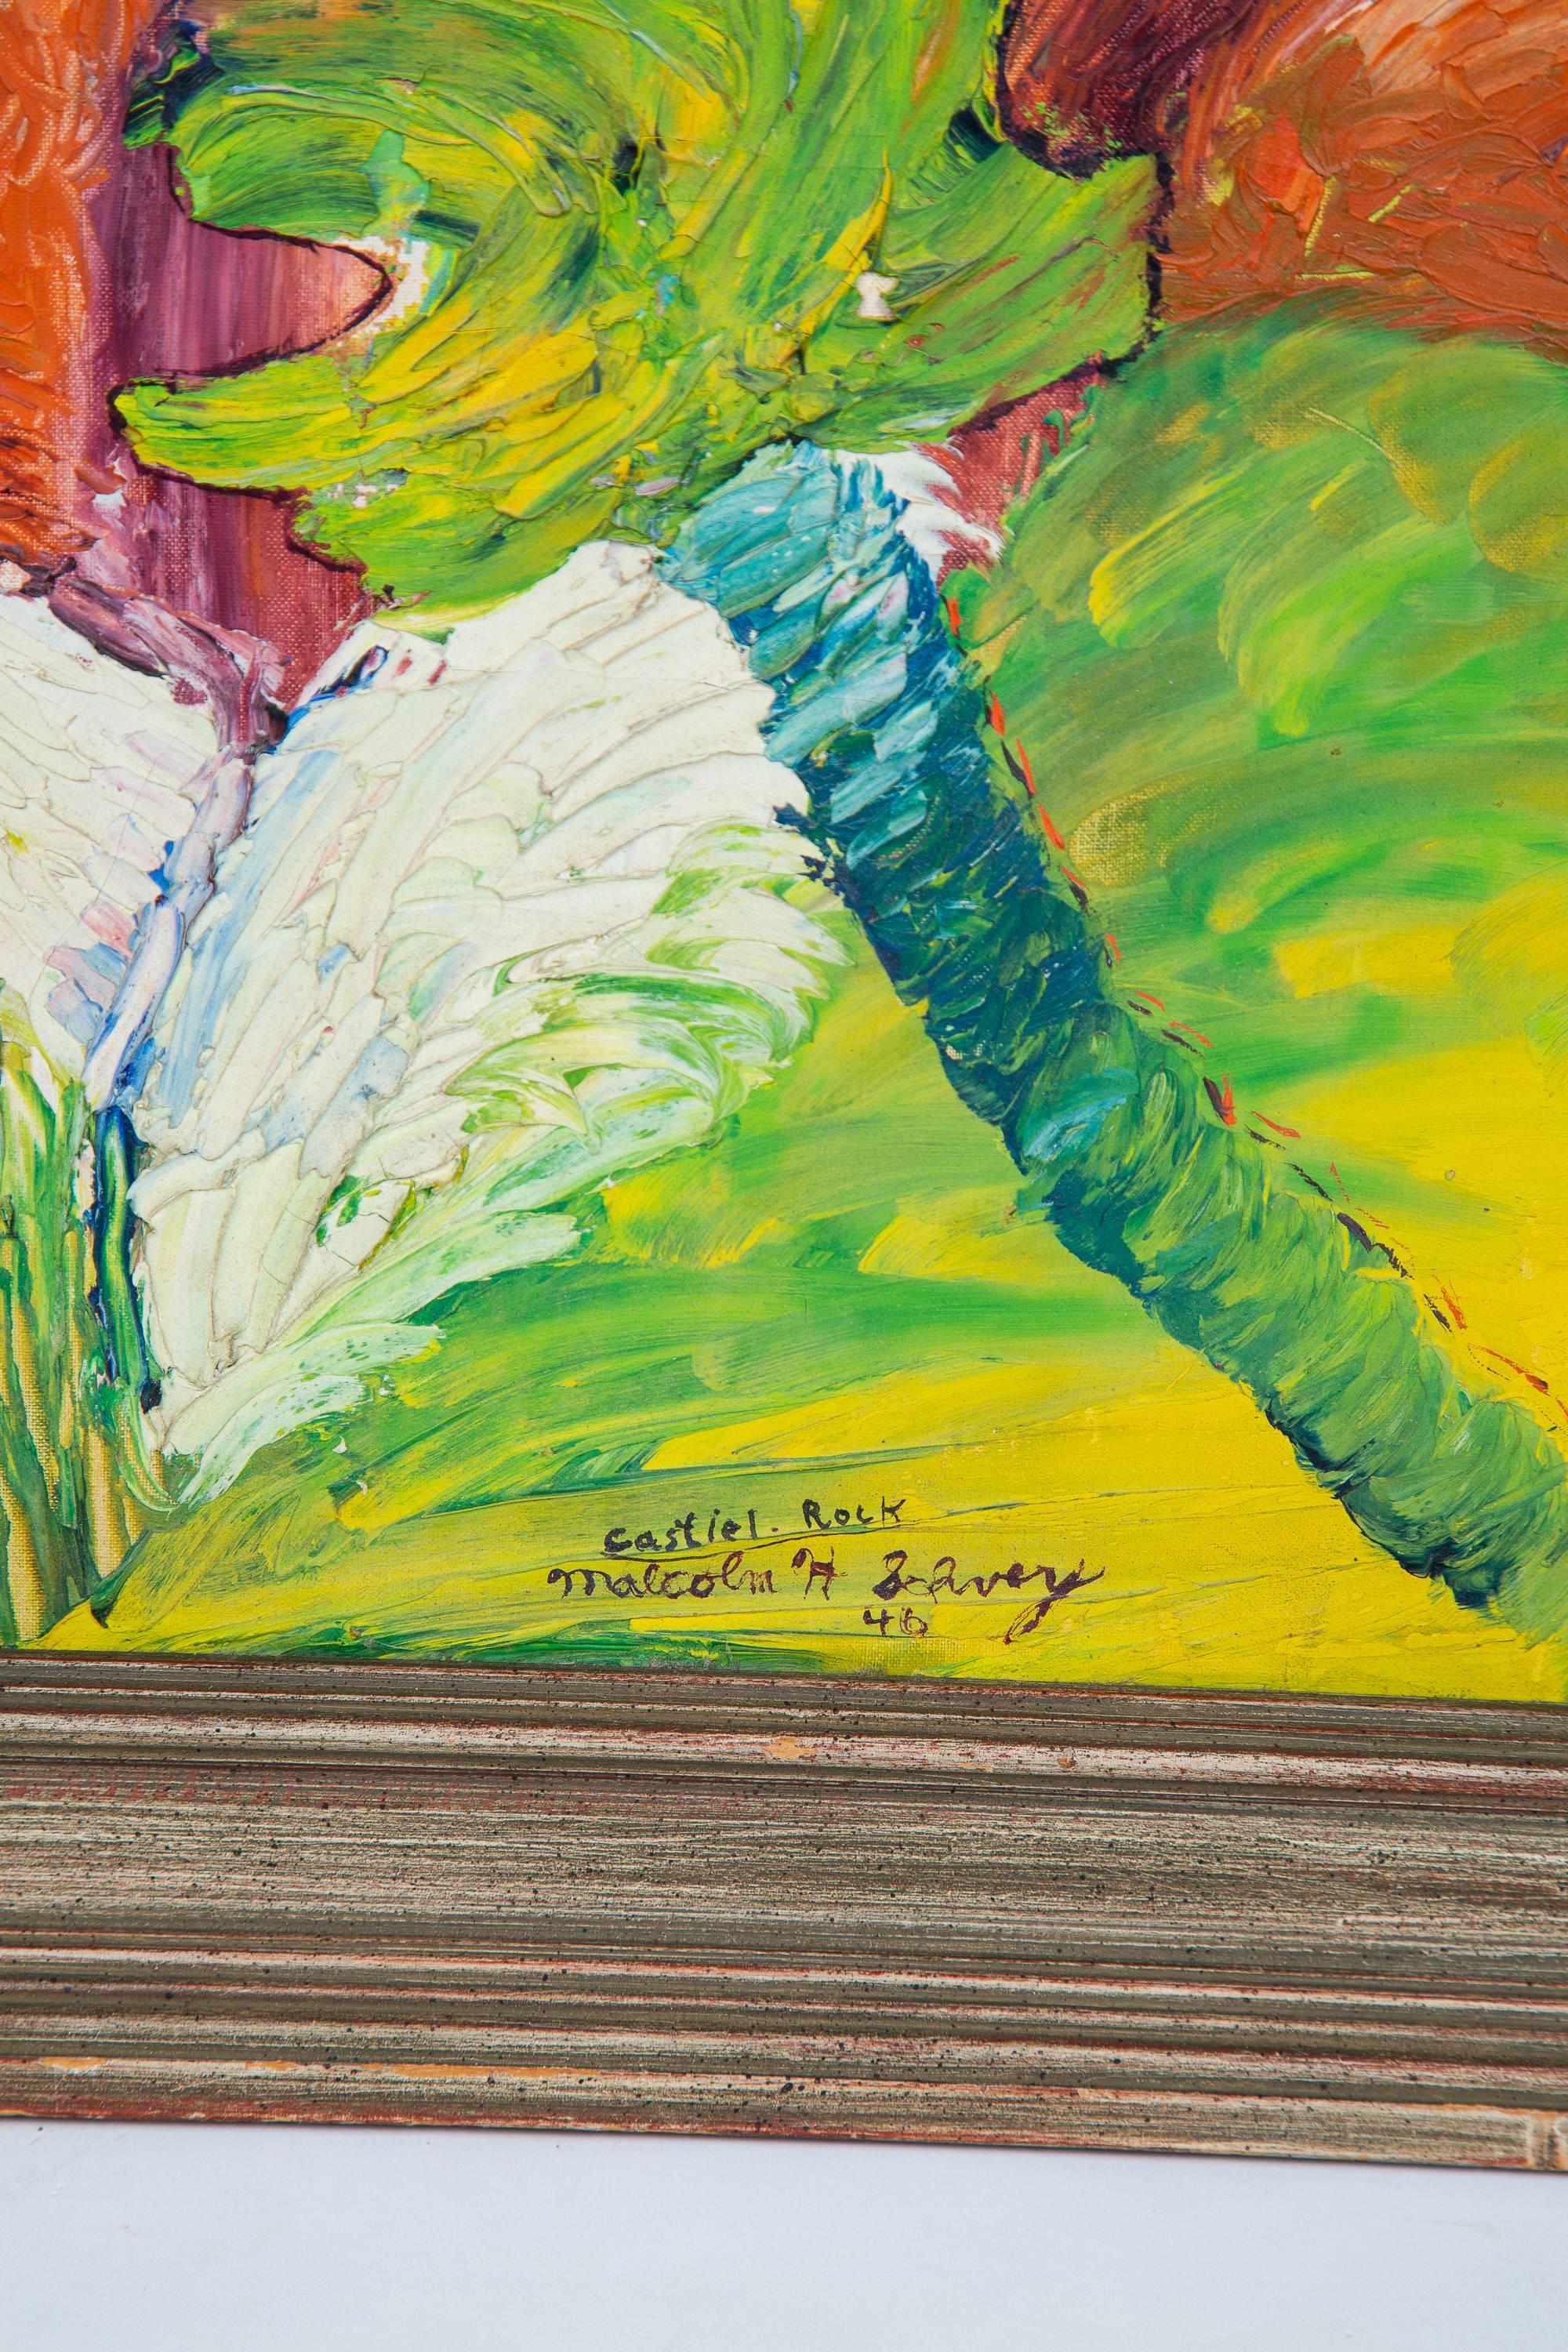 peinture surréaliste à l'huile sur toile des années 1940 représentant Castle Rock dans des couleurs brillantes.
Le cadre mesure 24,75 H x 22,75 L x 1 P. La peinture mesure 19,5 x 15,5 pouces.
Signé Malcolm H Schvey 48. Castle rock.